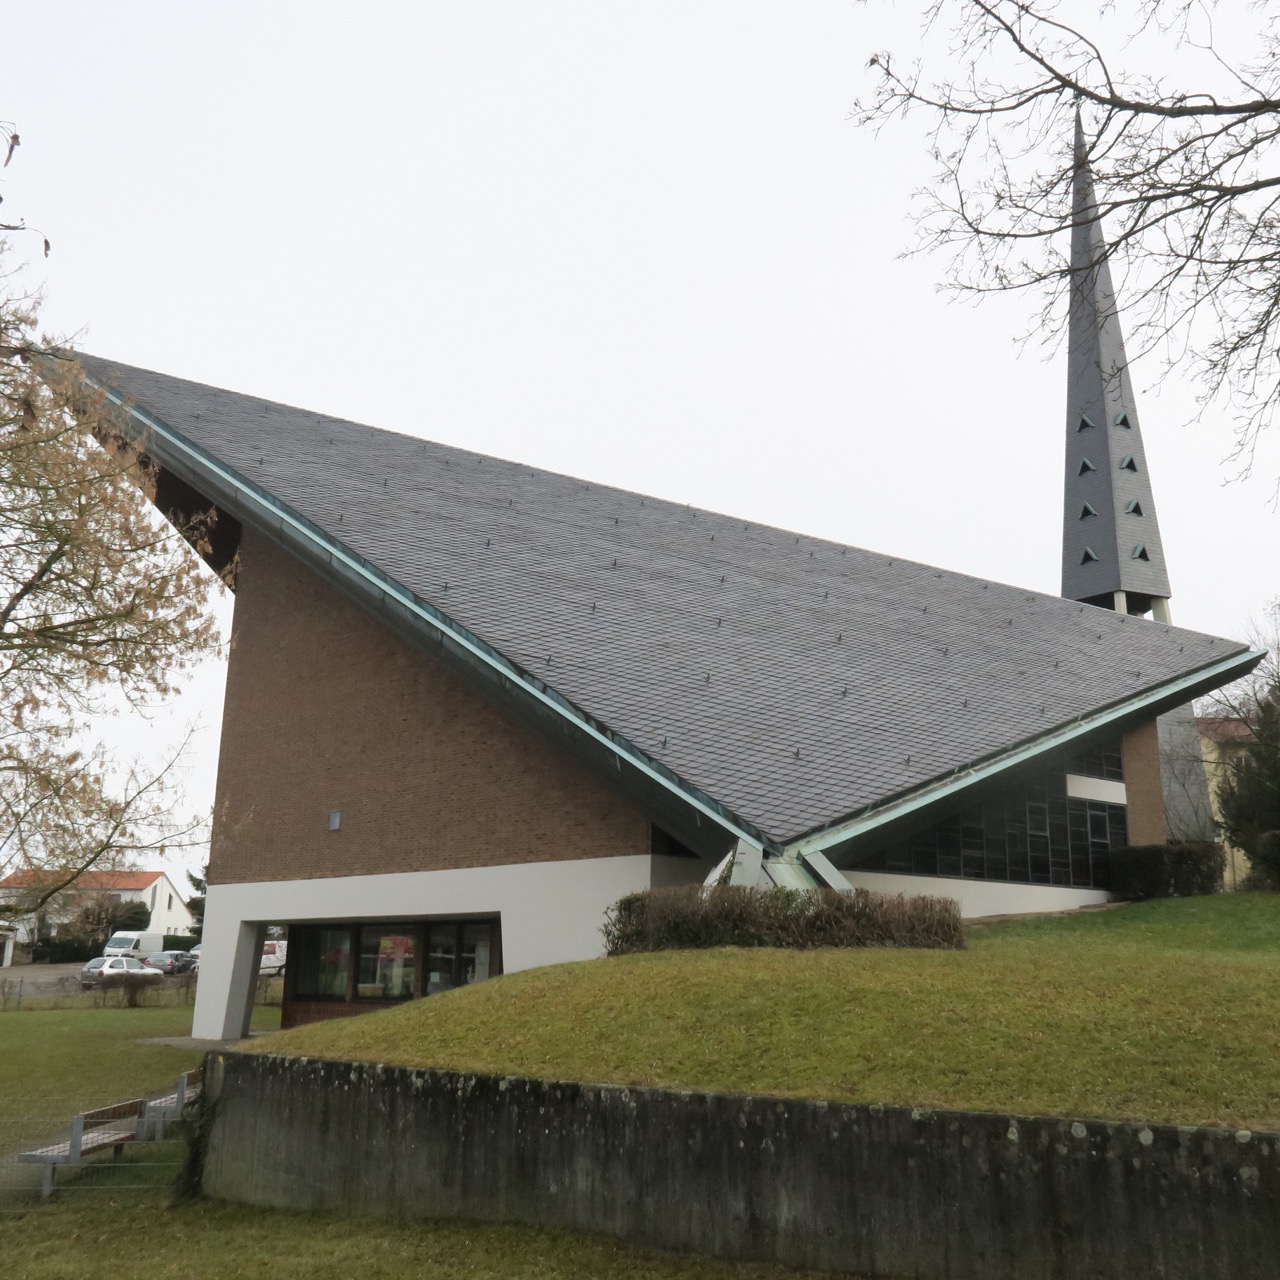 Heinz Rall, a Church Architect from Stuttgart: Visit a Church